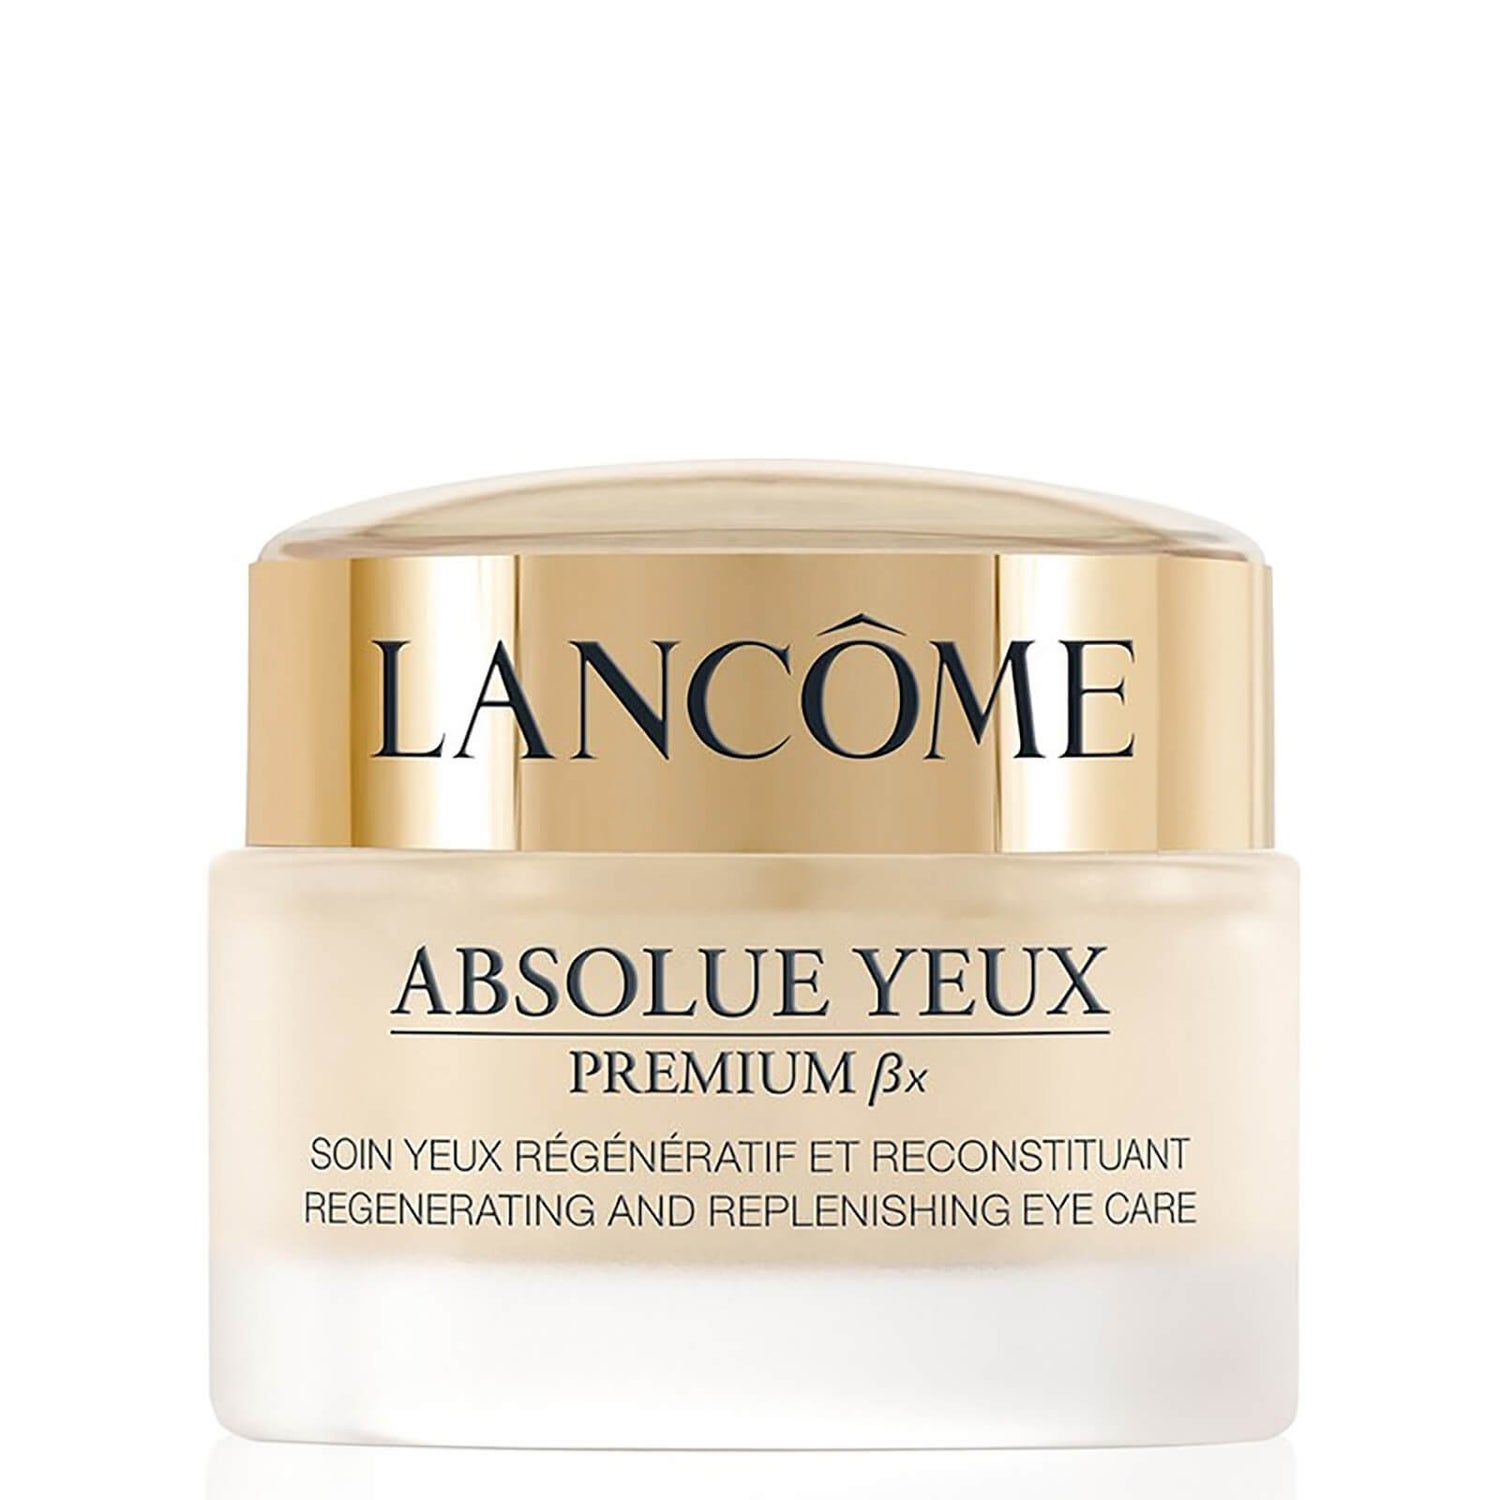 Lancôme Absolue Yeux Premium BX Eye Cream 20 ml